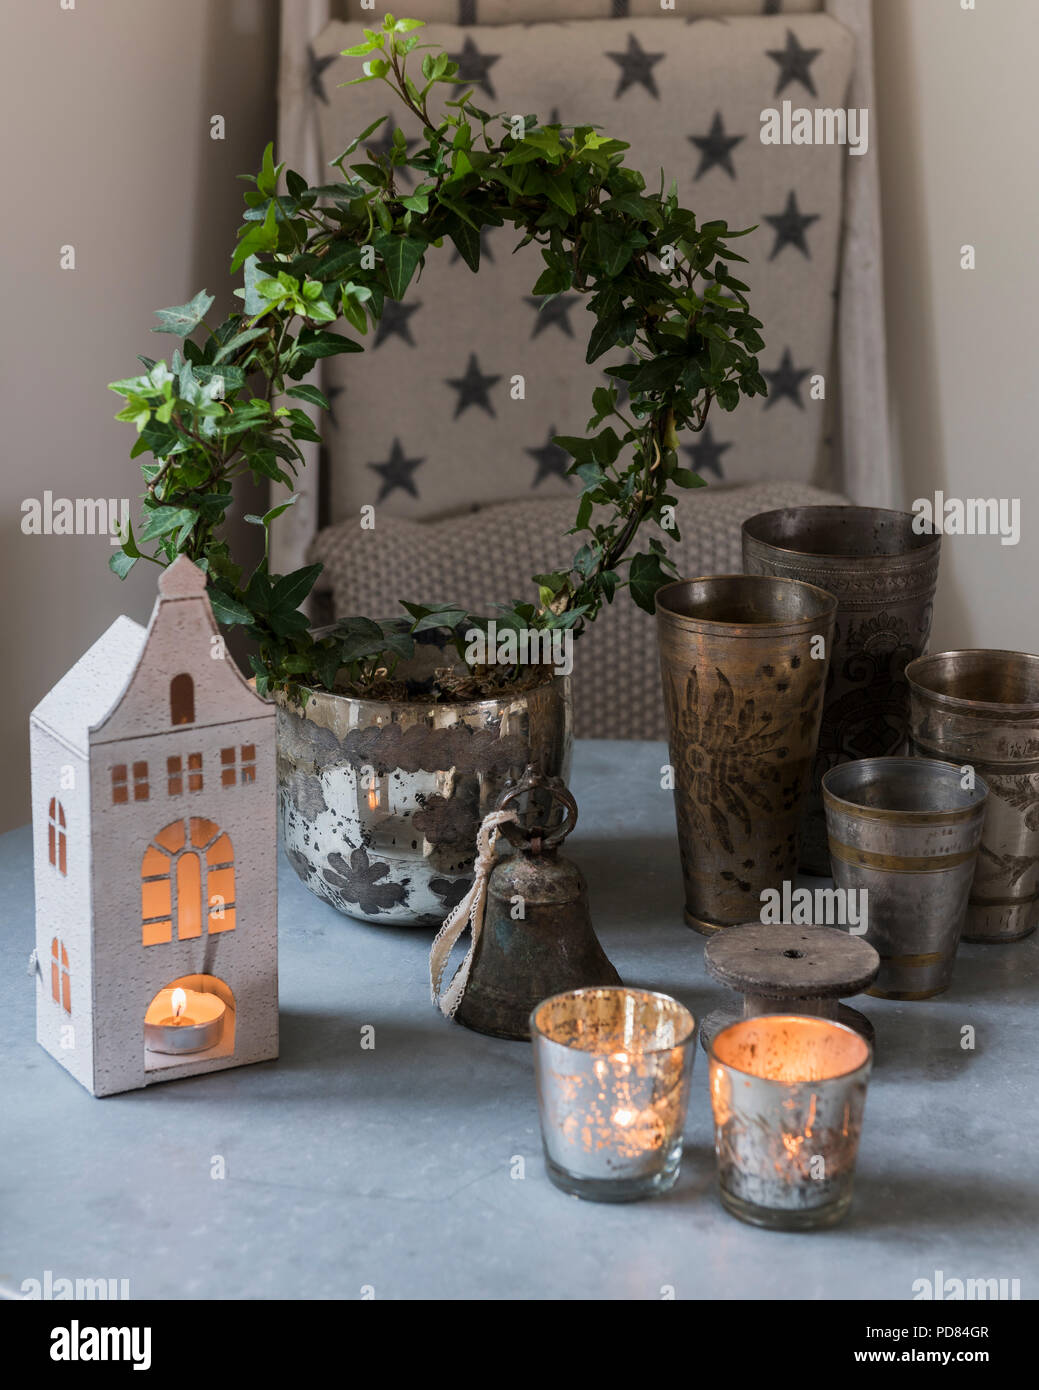 Selezione delle tealight e piccola ghirlanda di edera sul piano del tavolo con coppe in peltro Foto Stock